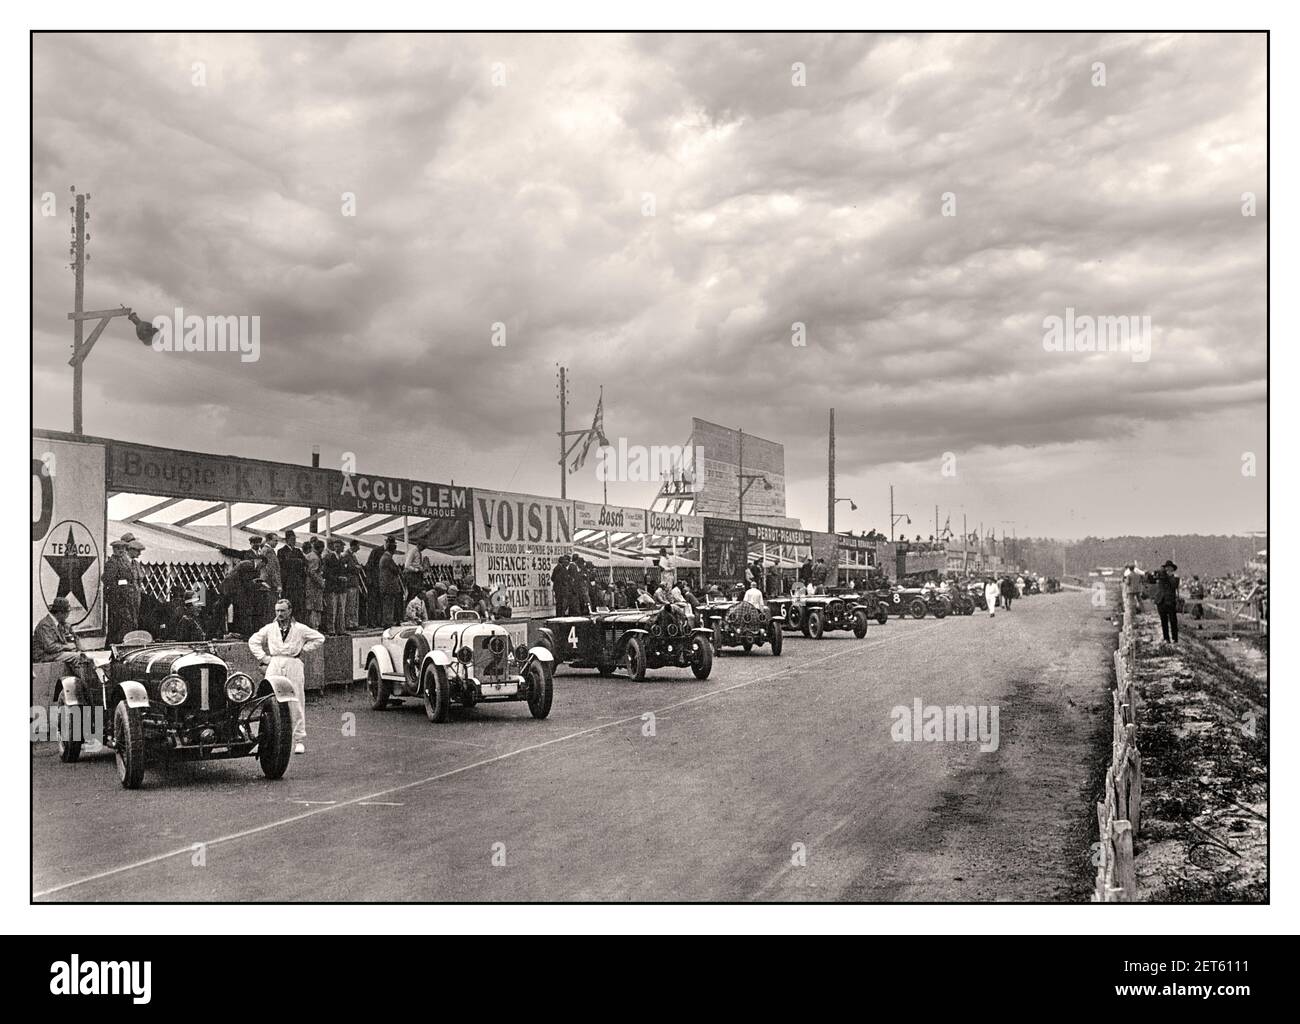 Vintage LE MANS 24 HR Grid startklar bei den 1929 24 Stunden des Le Mans Motor Race Frankreich, das Bentley Speed Six No 1 der britischen Fahrer Barnato & Birkin auf der linken Seite im Vordergrund gewann. Stockfoto